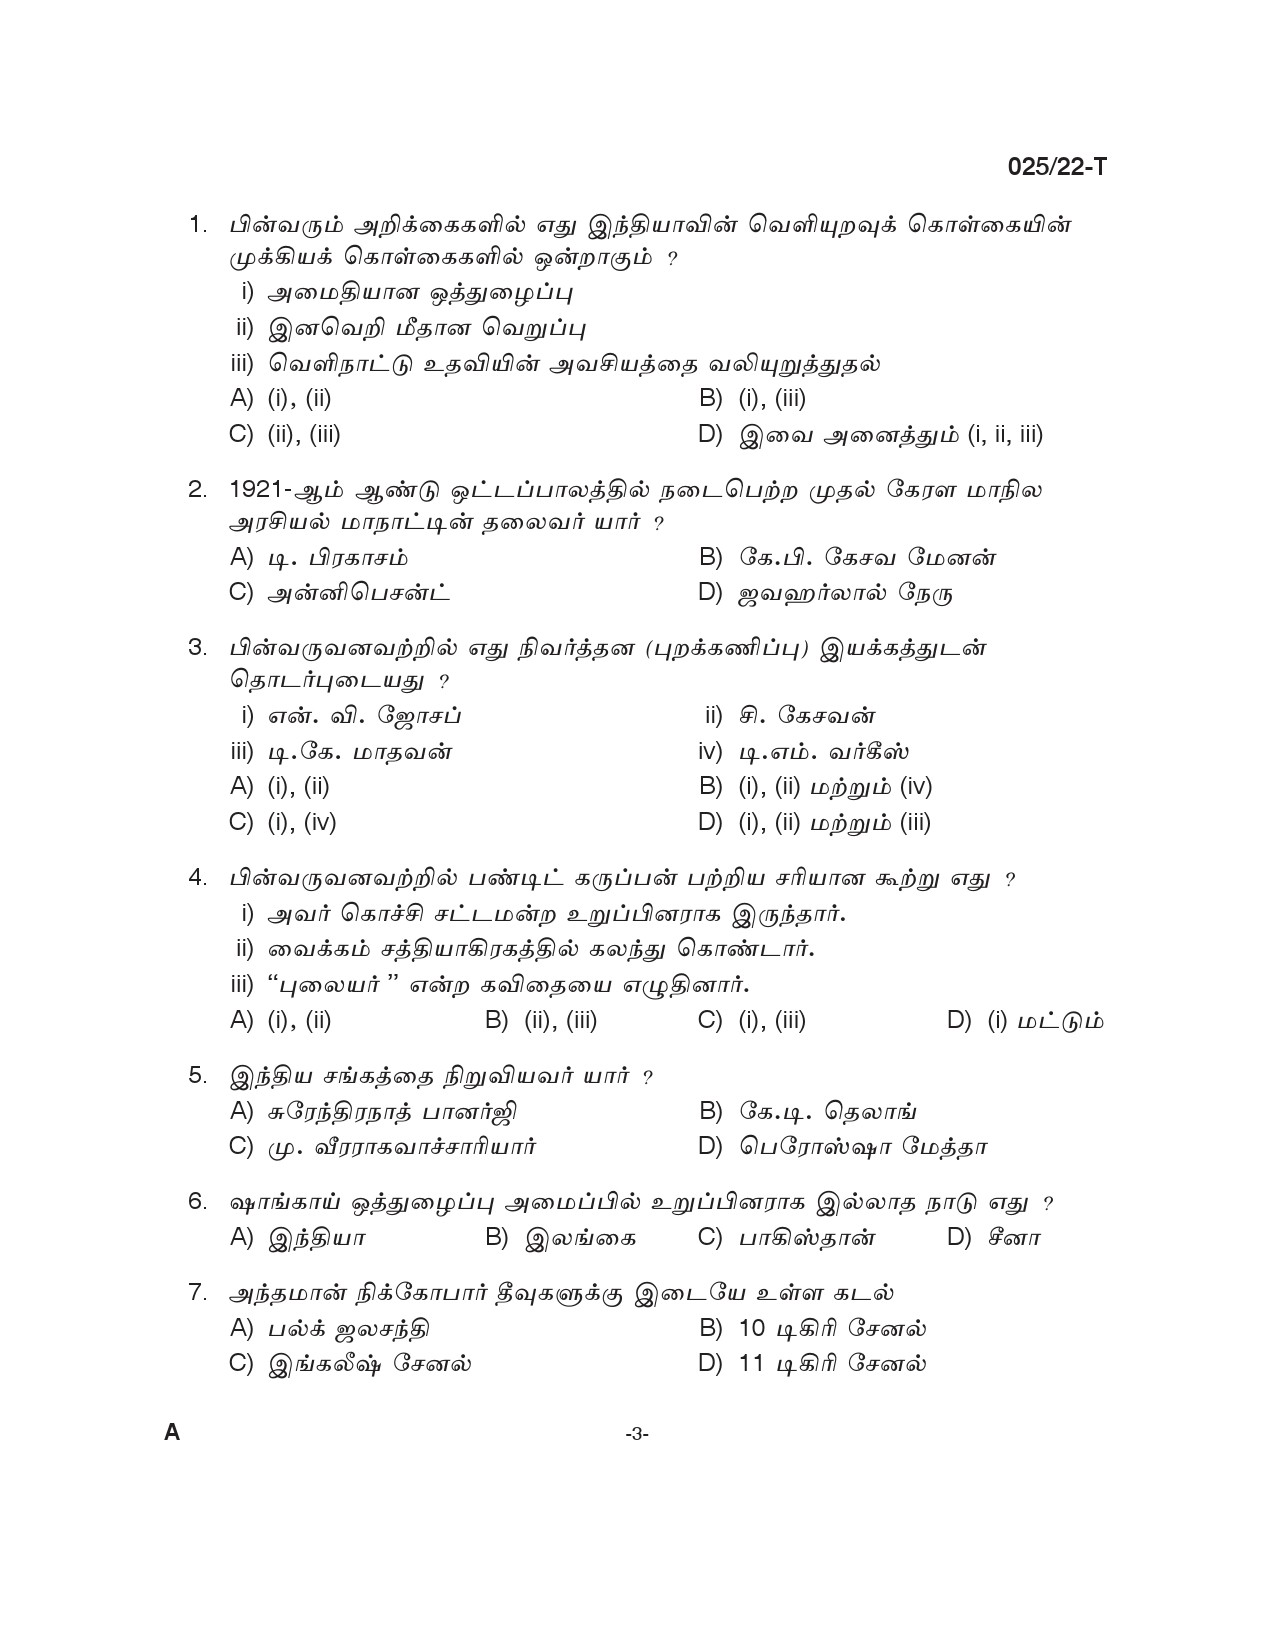 KPSC Civil Excise Officer Plus 2 Level Main Exam Tamil 2022 2